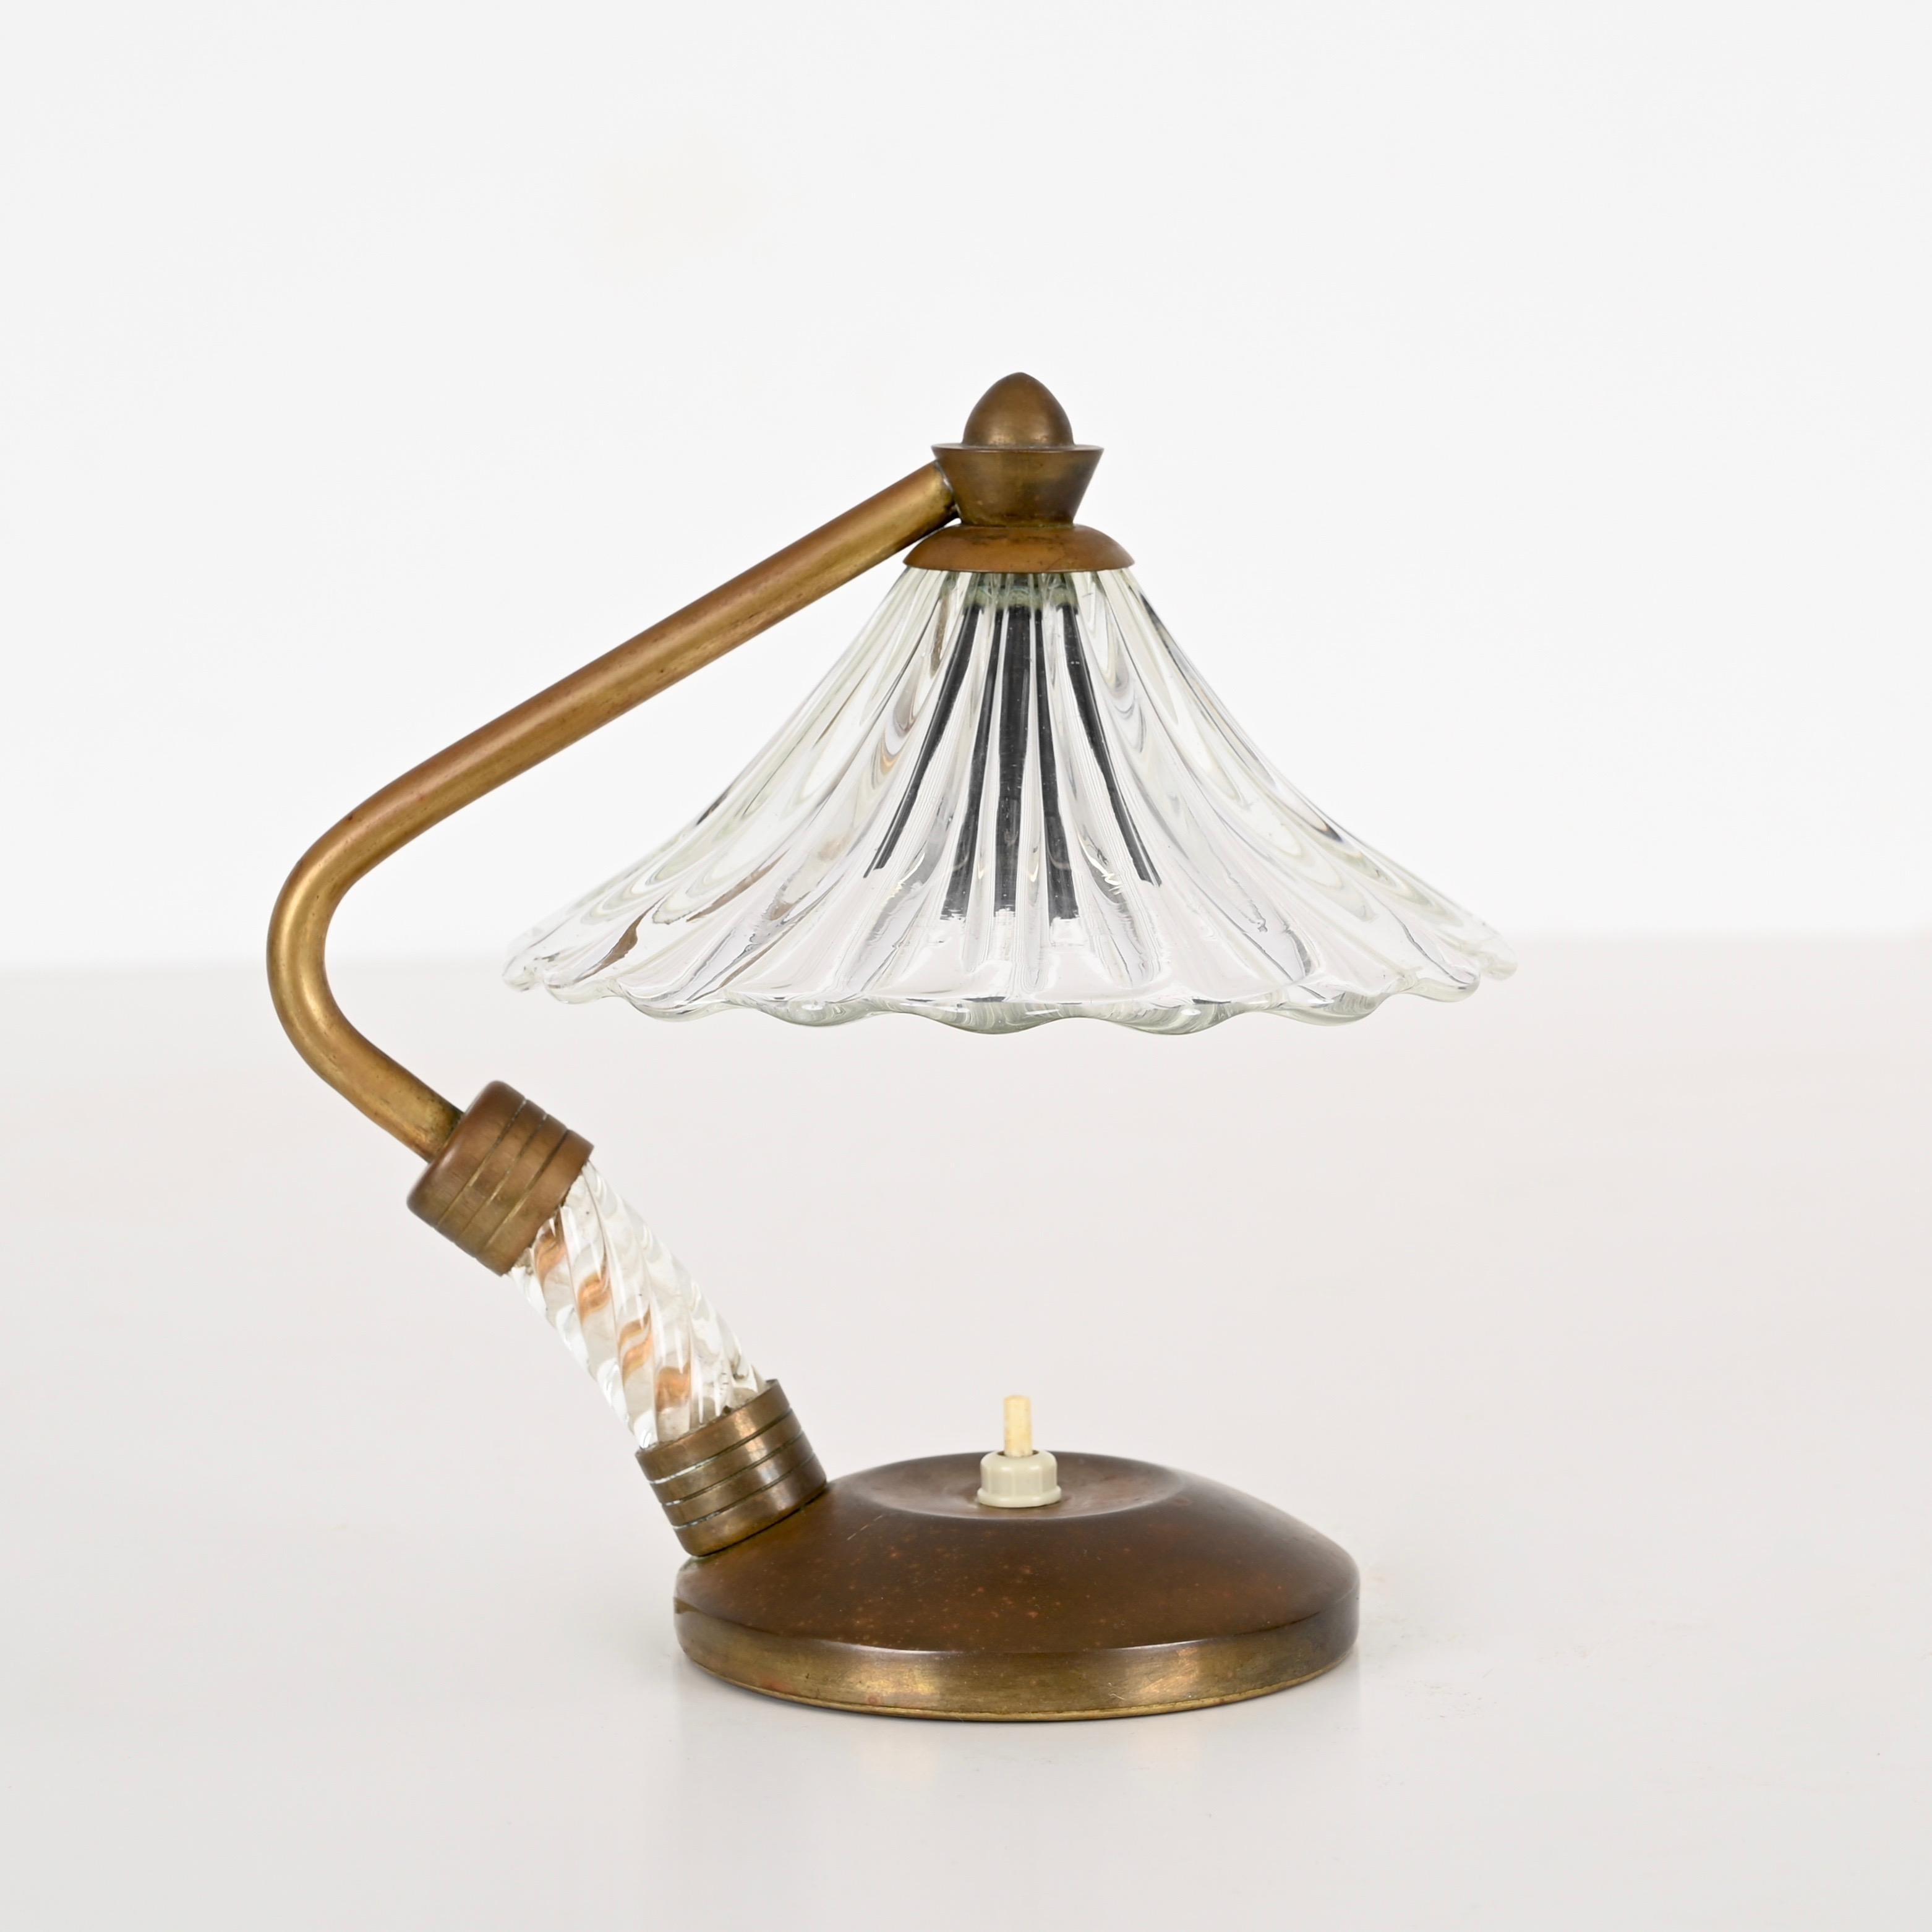 Magnifique lampe de table en verre de Murano et laiton. Cette lampe incroyablement élégante a été conçue par Eleg Barovier et fabriquée en Italie au début des années 40.  

L'abat-jour de cette lampe finement travaillée rappelle la forme d'une fleur